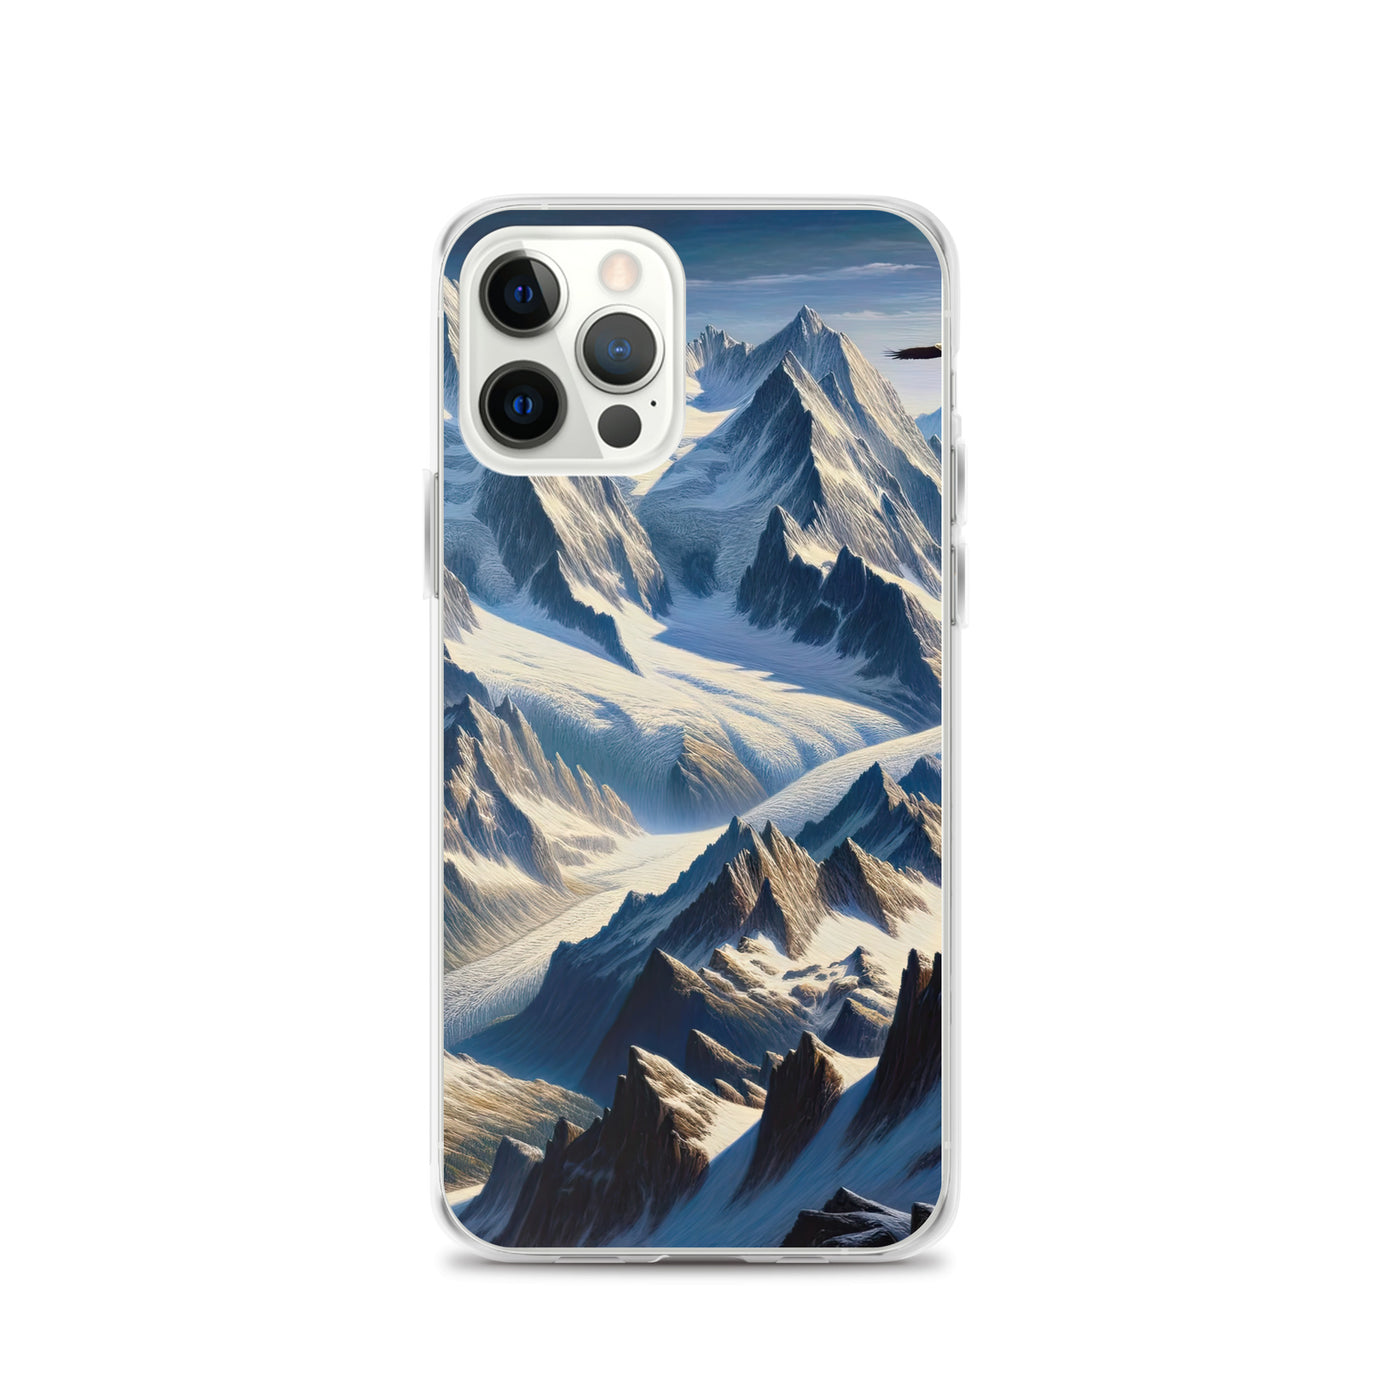 Ölgemälde der Alpen mit hervorgehobenen zerklüfteten Geländen im Licht und Schatten - iPhone Schutzhülle (durchsichtig) berge xxx yyy zzz iPhone 12 Pro